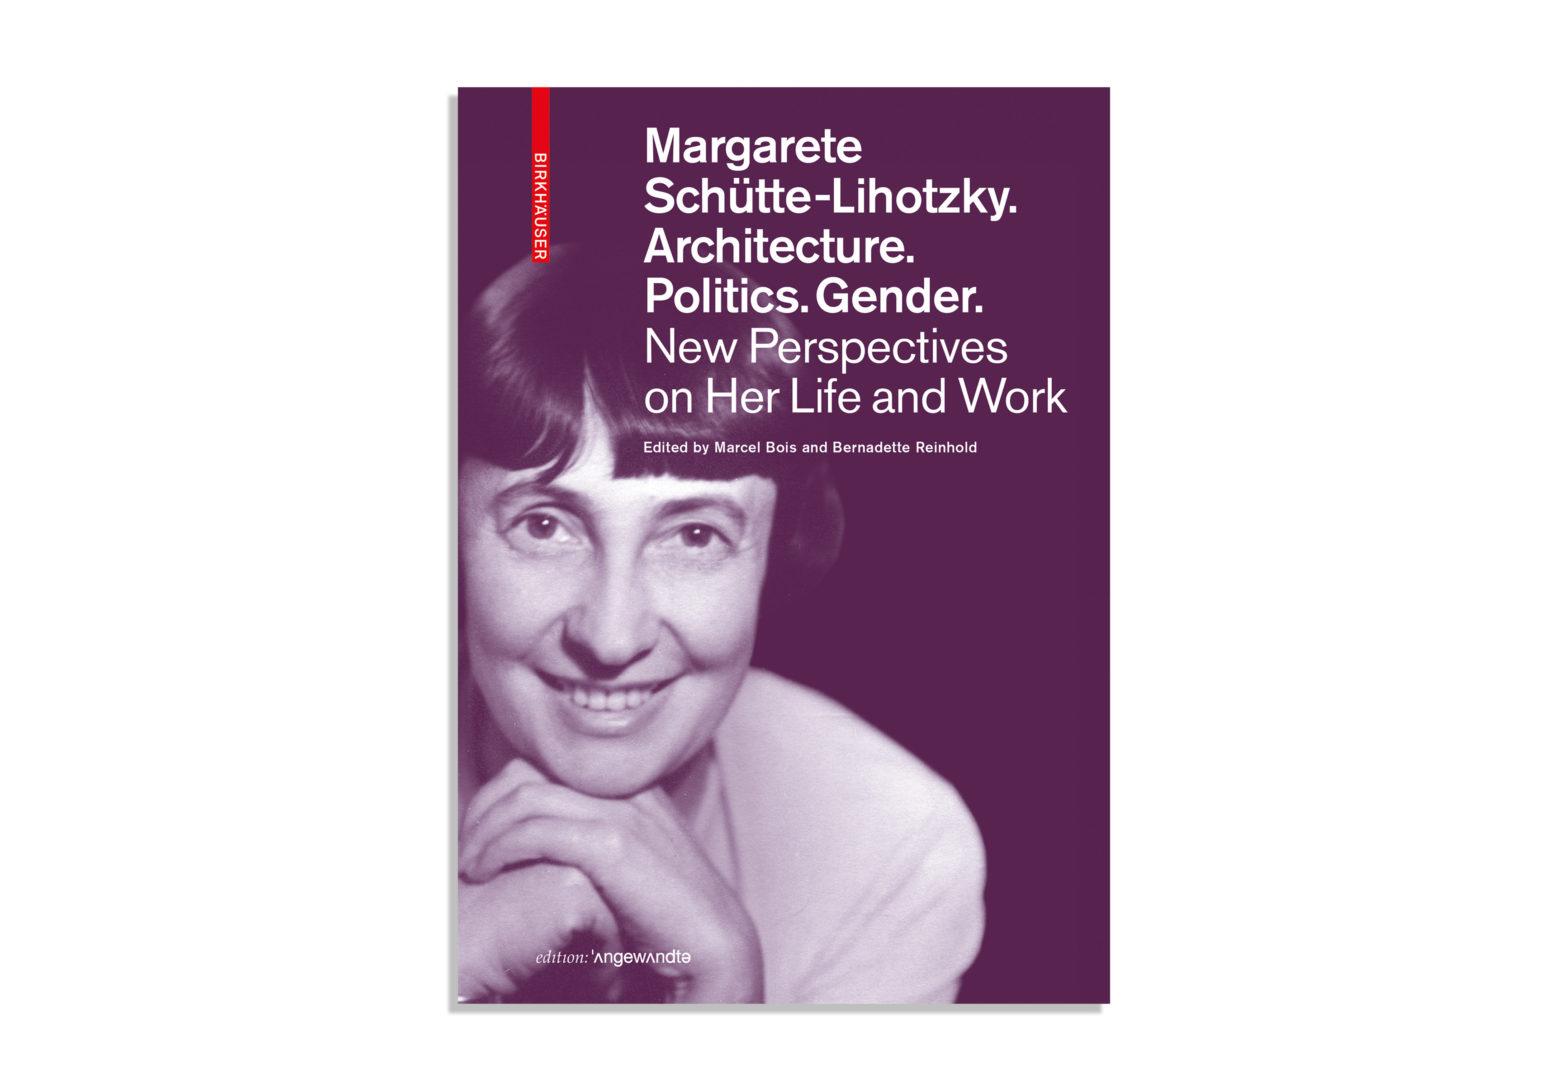 Margarete Schütte-Lihotzky: Pioneering Architect. Visionary Activist. | Exhibition